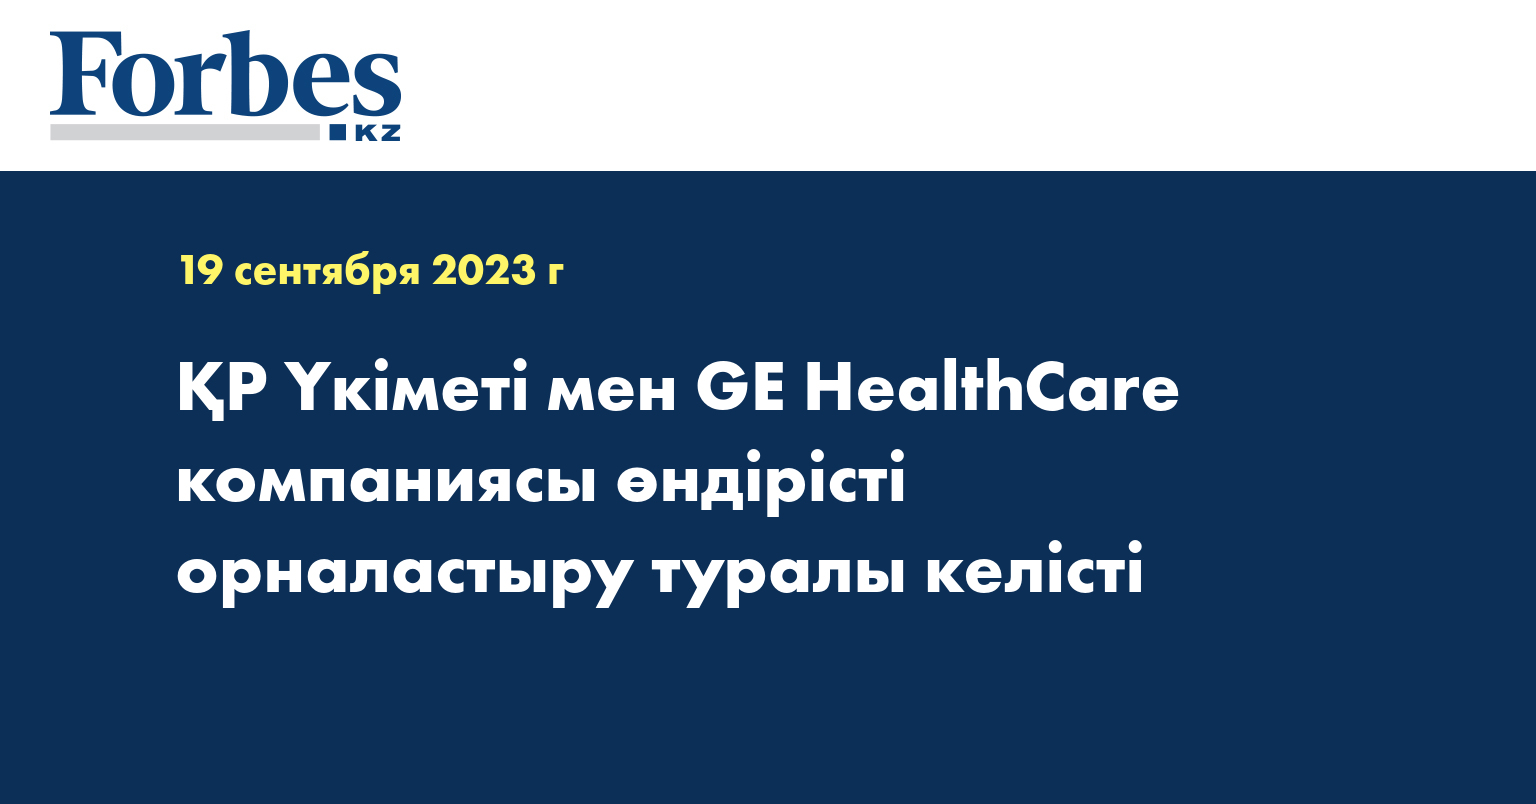 ҚР Үкіметі мен GE HealthCare компаниясы өндірісті орналастыру туралы келісті